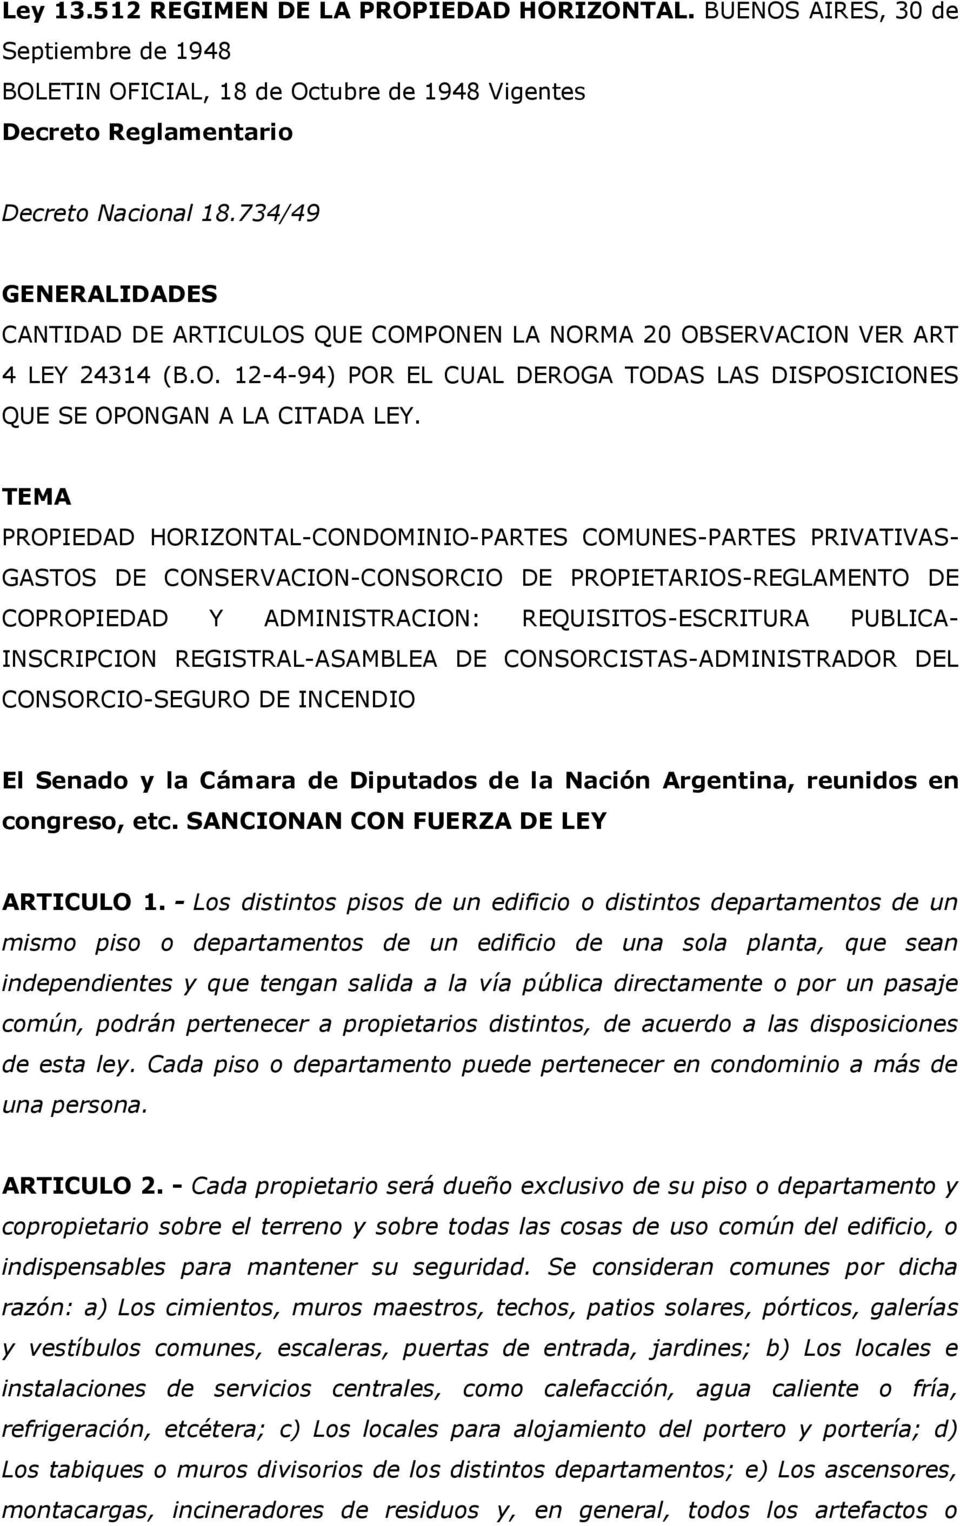 TEMA PROPIEDAD HORIZONTAL-CONDOMINIO-PARTES COMUNES-PARTES PRIVATIVAS- GASTOS DE CONSERVACION-CONSORCIO DE PROPIETARIOS-REGLAMENTO DE COPROPIEDAD Y ADMINISTRACION: REQUISITOS-ESCRITURA PUBLICA-